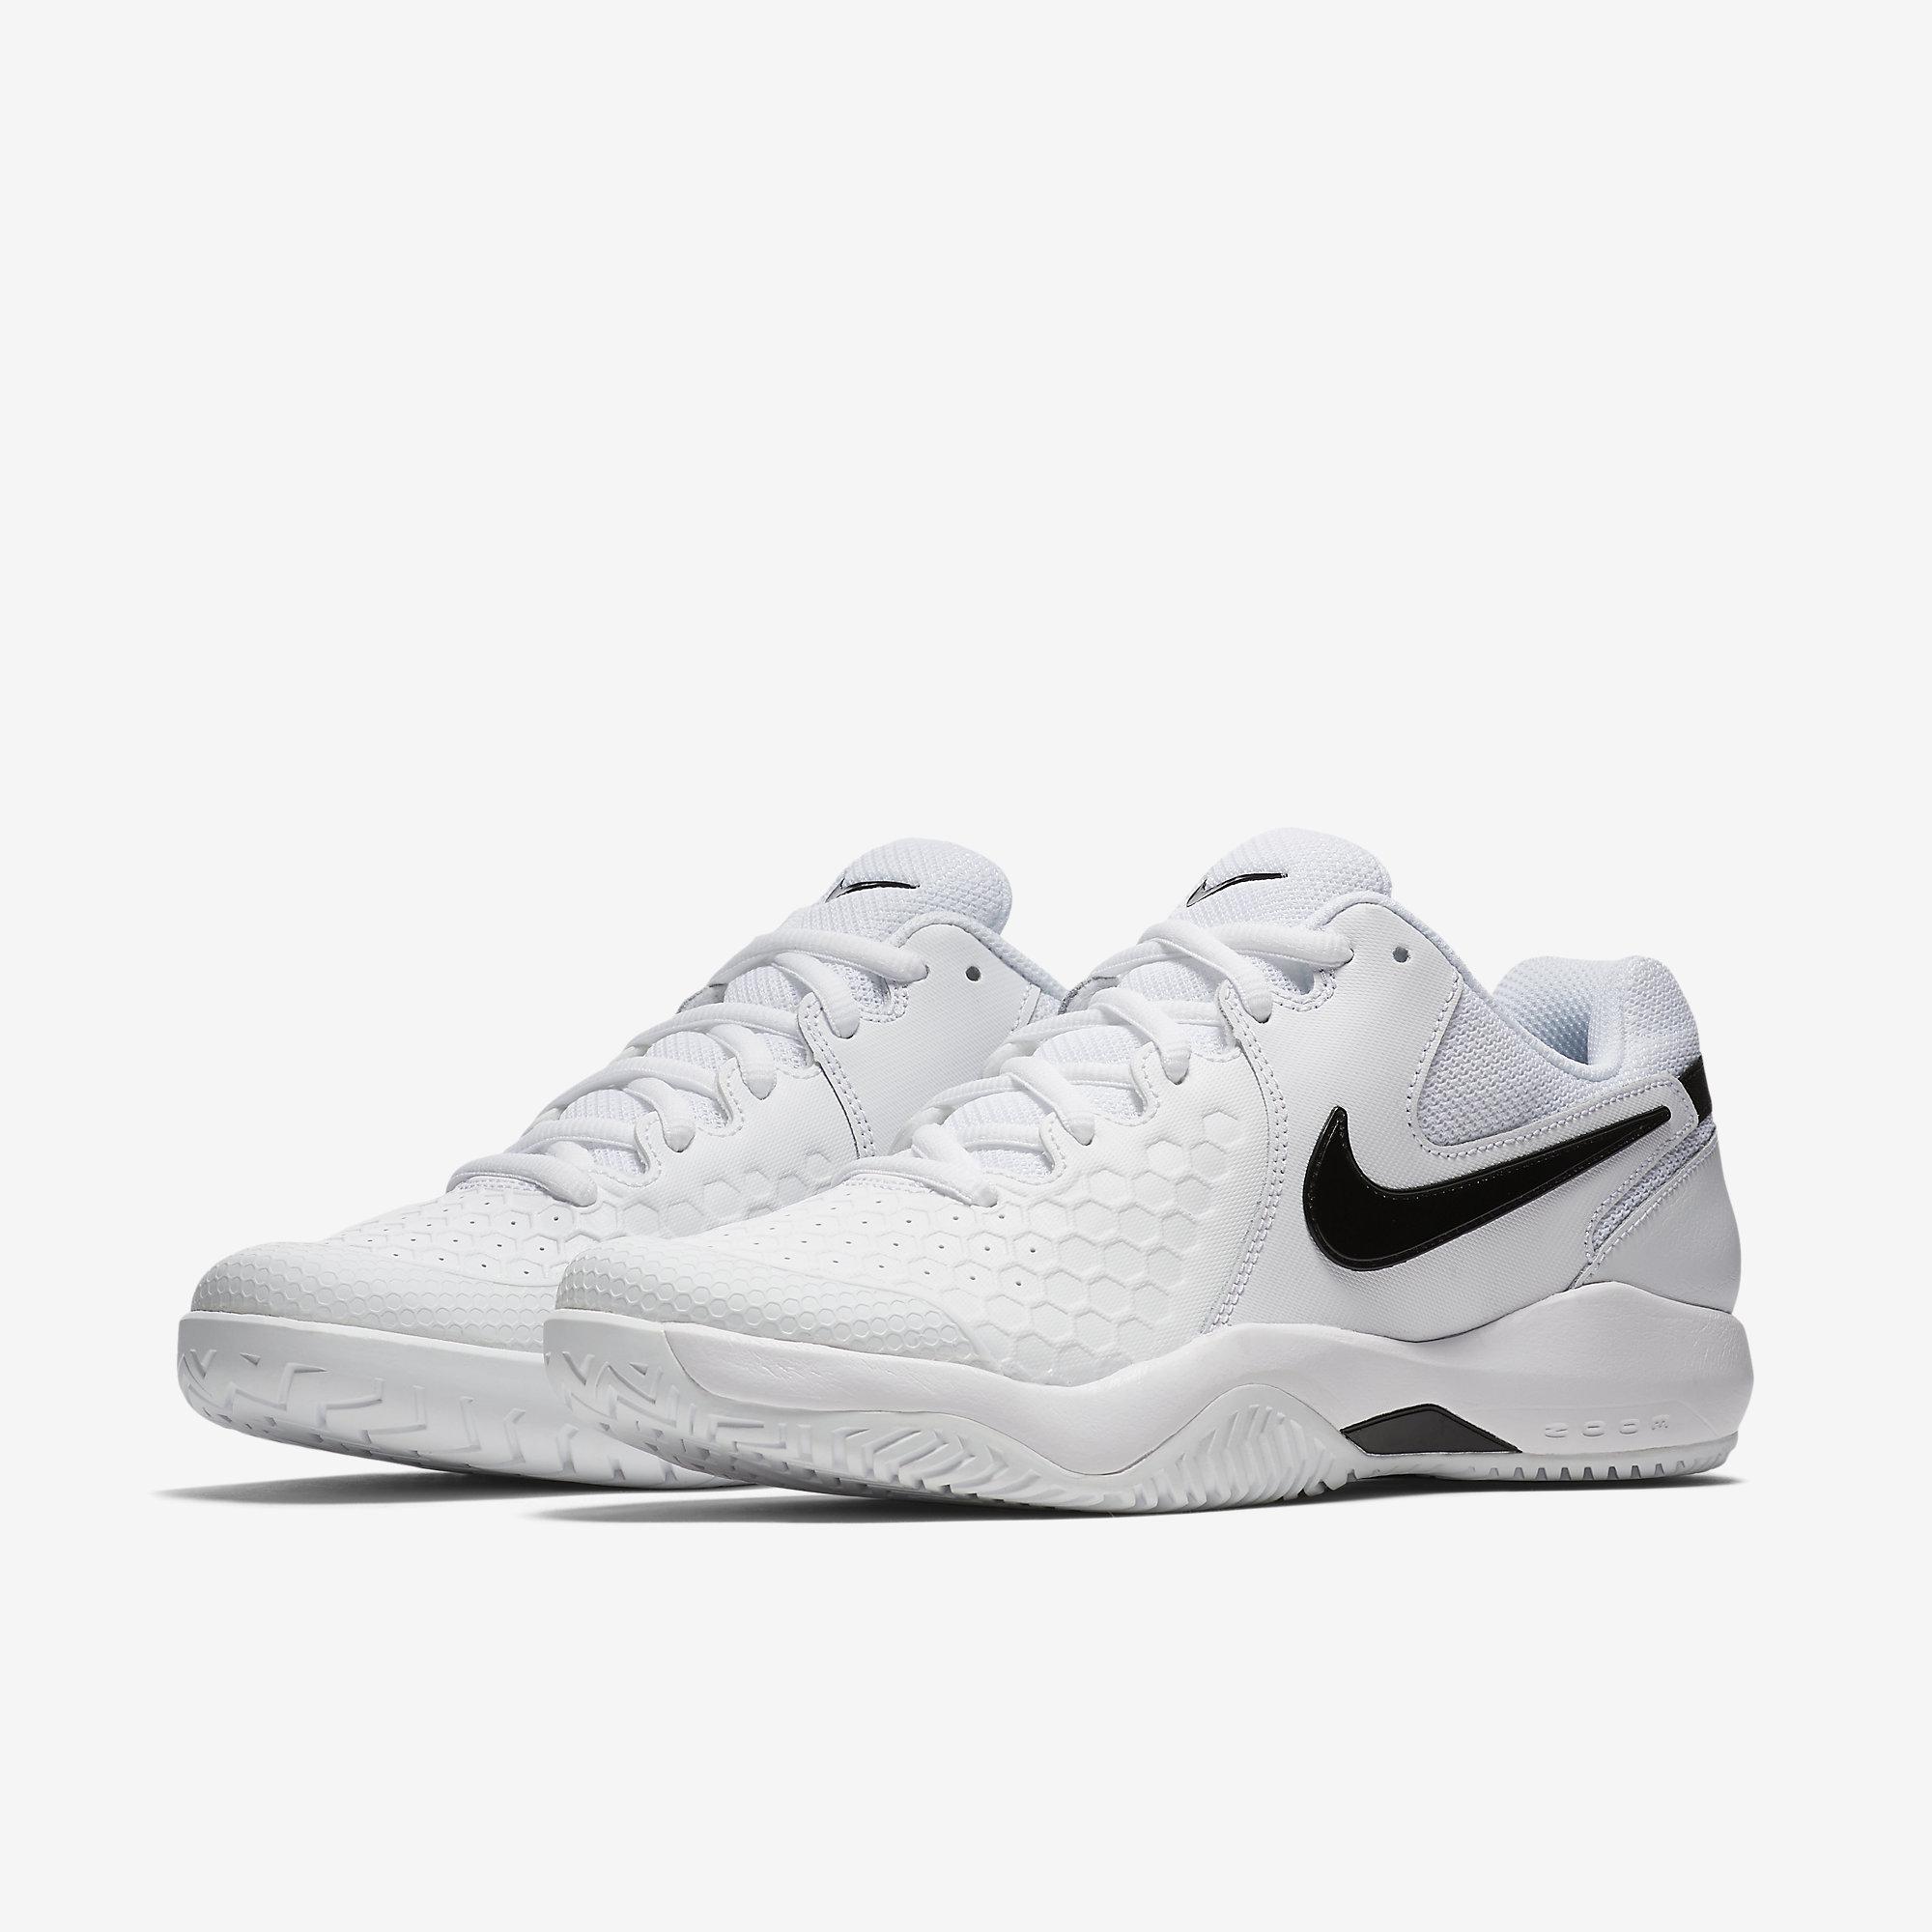 Nike Mens Air Zoom Resistance Tennis Shoes - White/Black - Tennisnuts.com